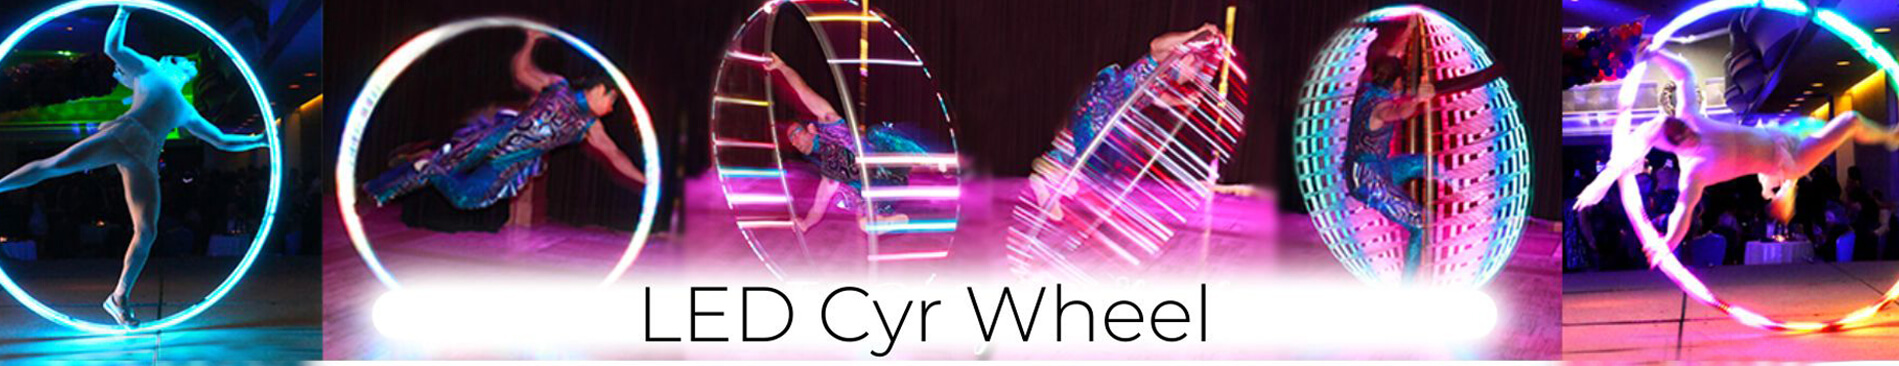 LED Cyr Wheel booking Catalyst Arts 